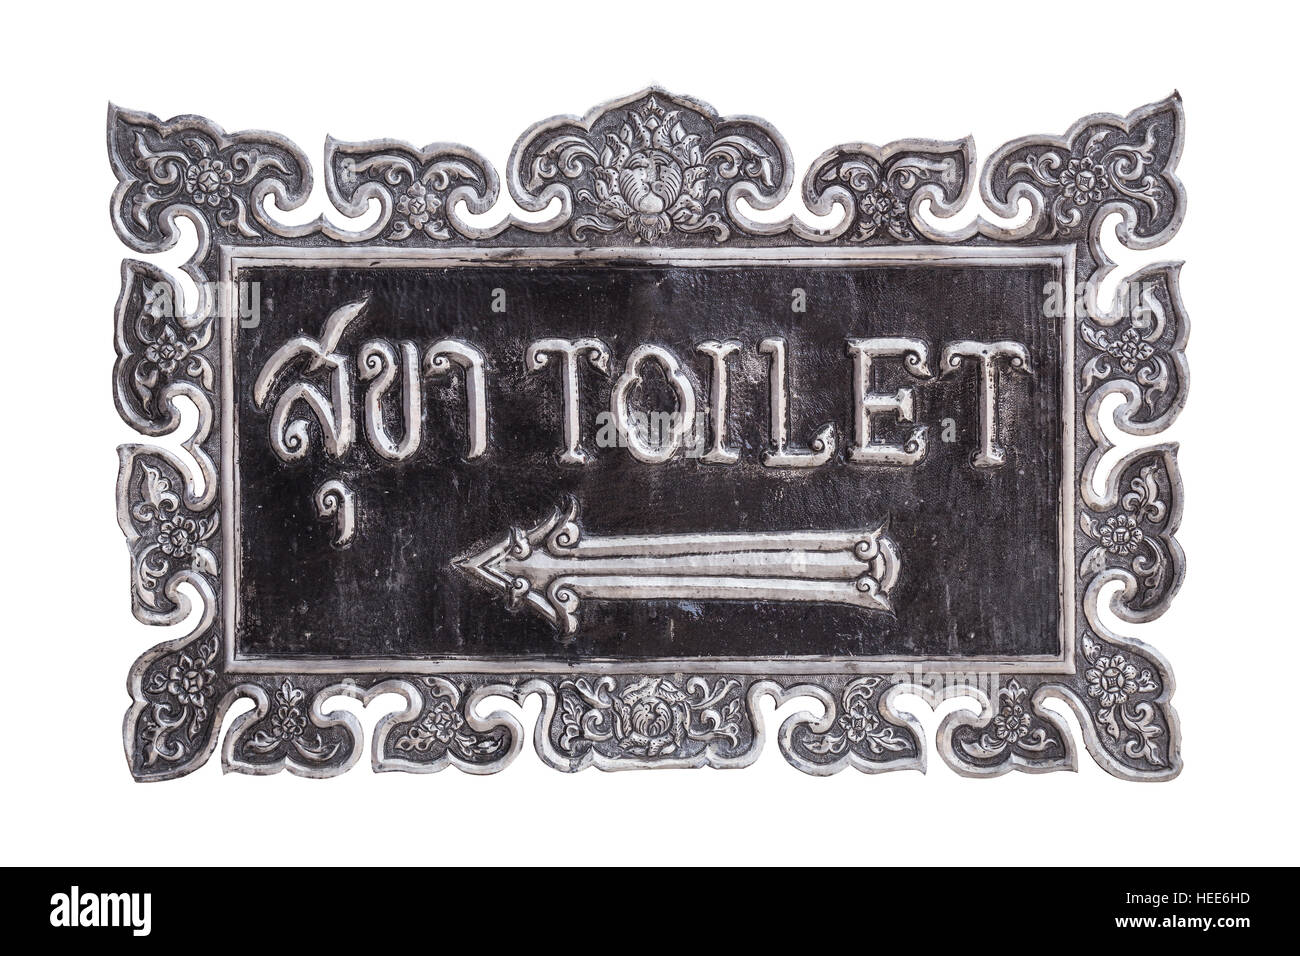 Close up toilettes signe fait par silver craft, isolé sur fond blanc. Enregistré avec clipping path Banque D'Images